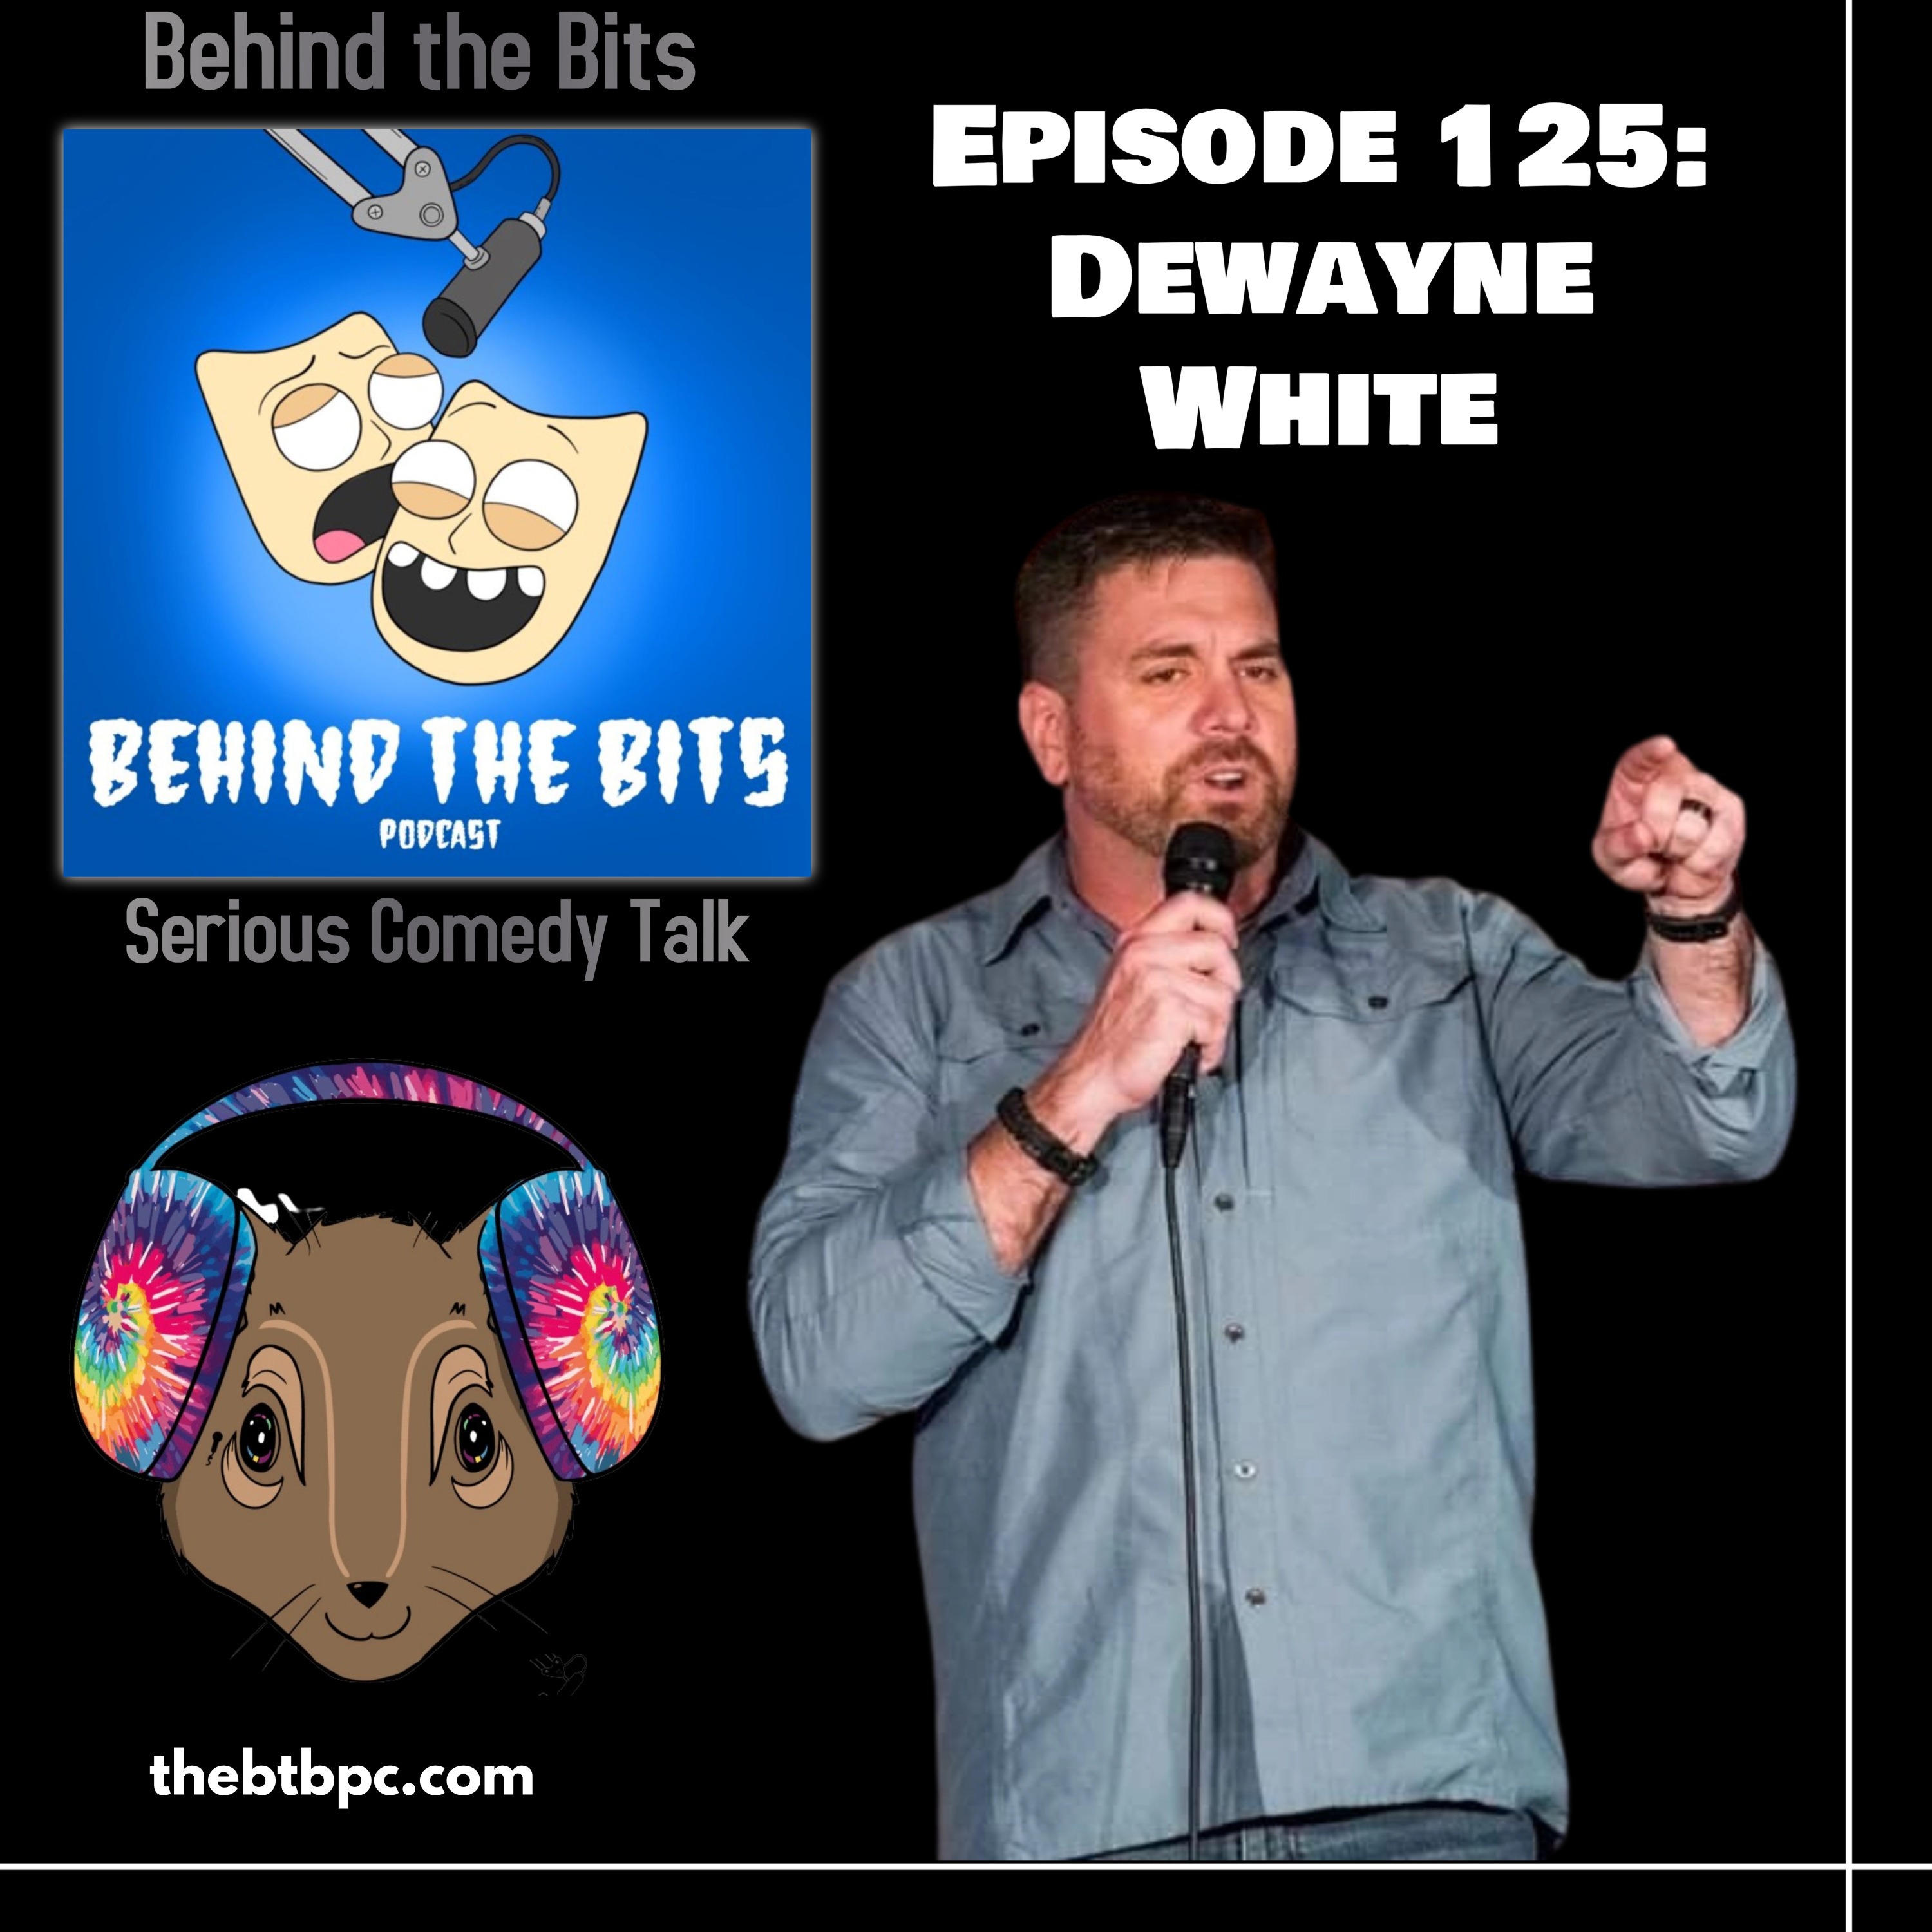 Episode 125: Dewayne White